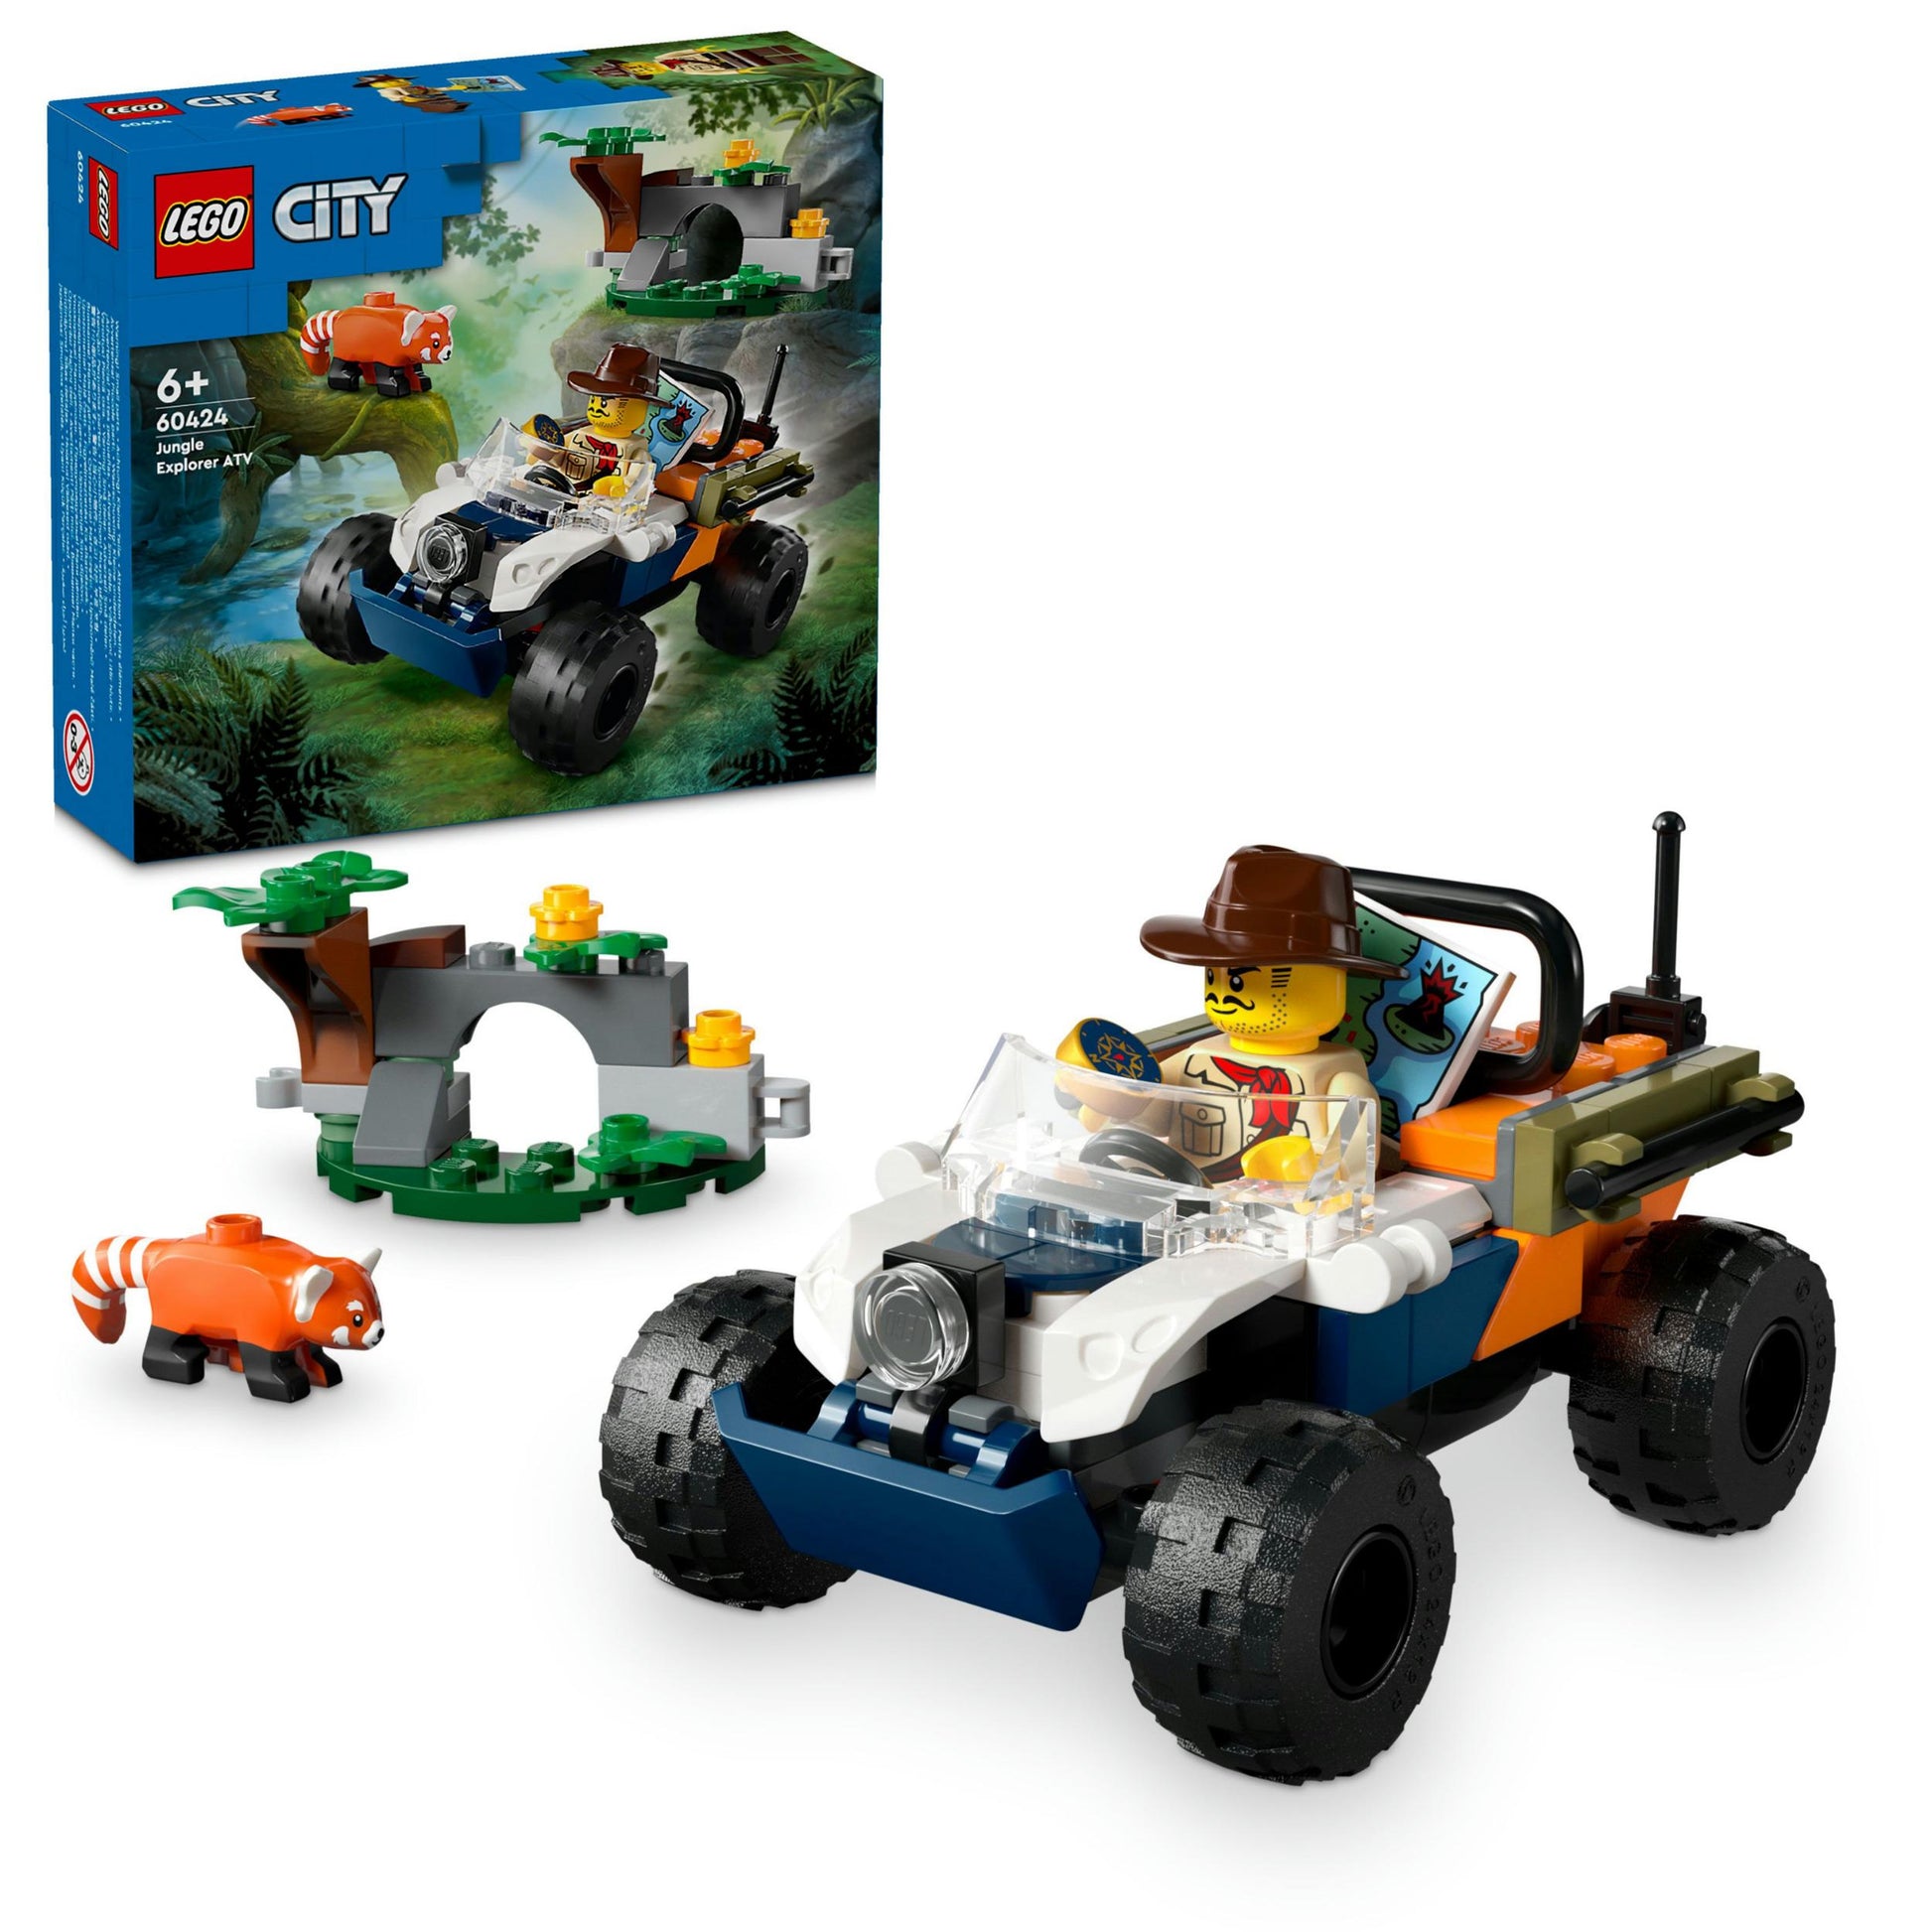 City - Jungle Explorer&#39s ATV